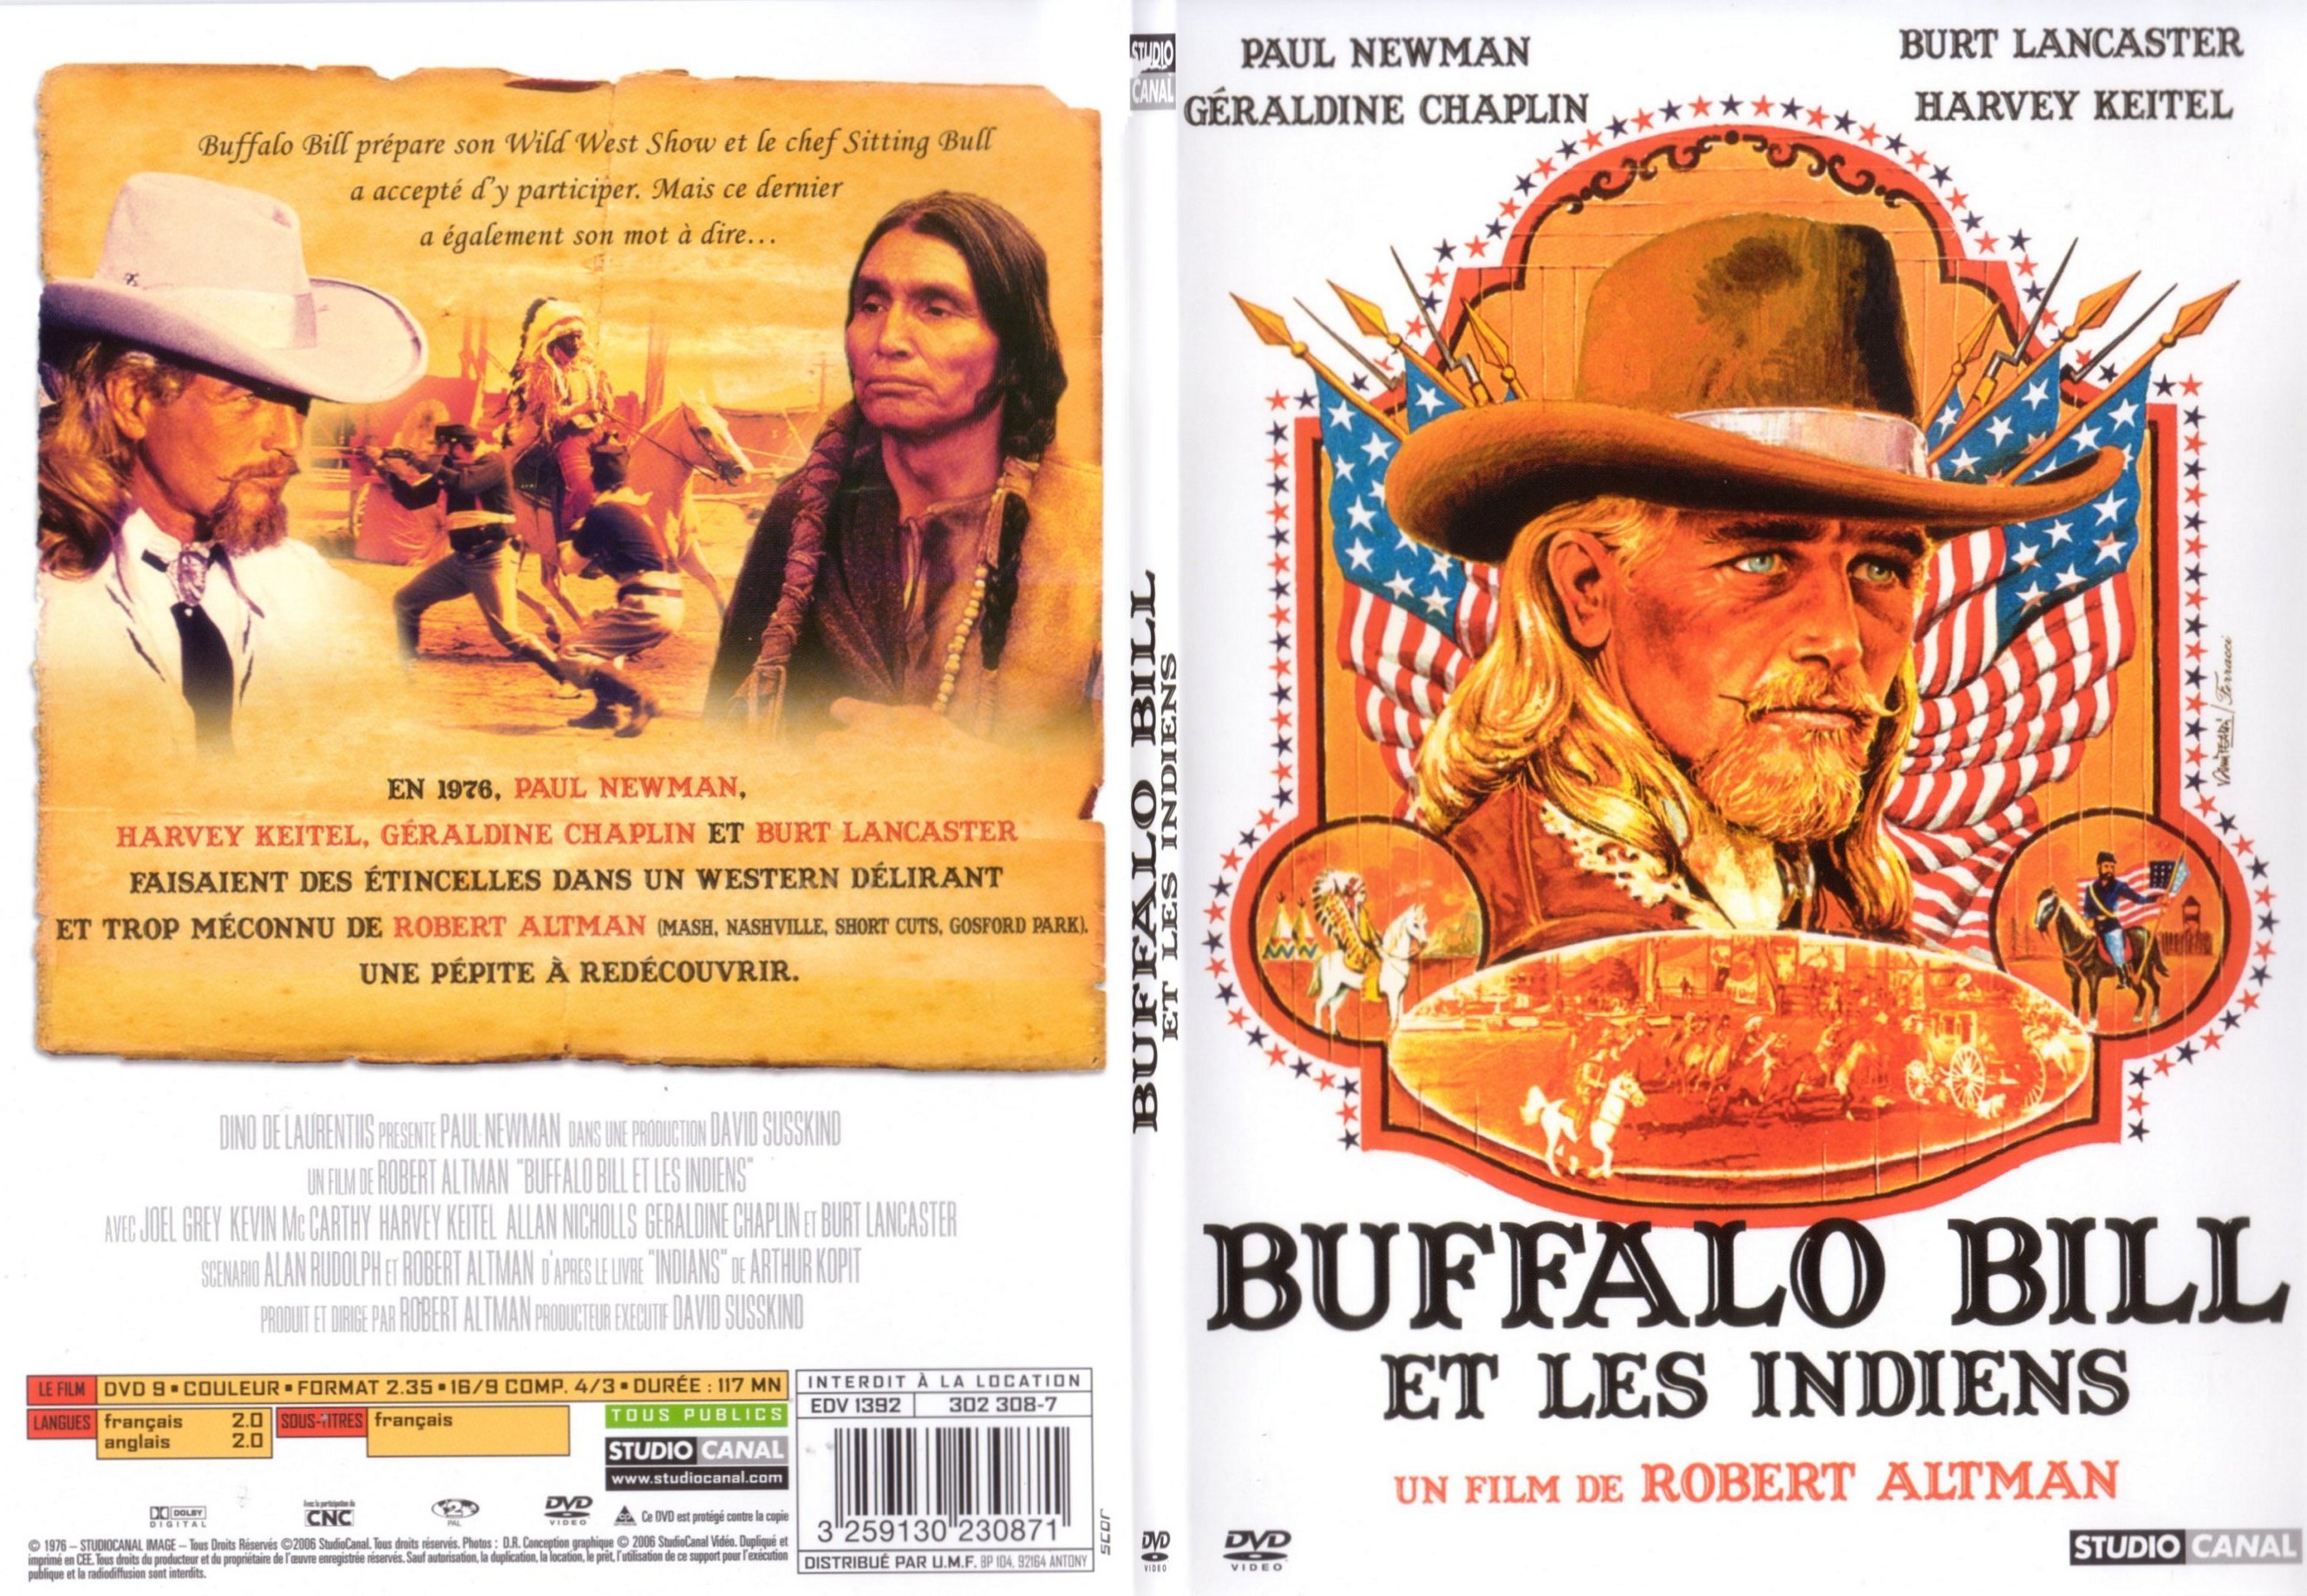 Jaquette DVD Buffalo Bill et les indiens - SLIM